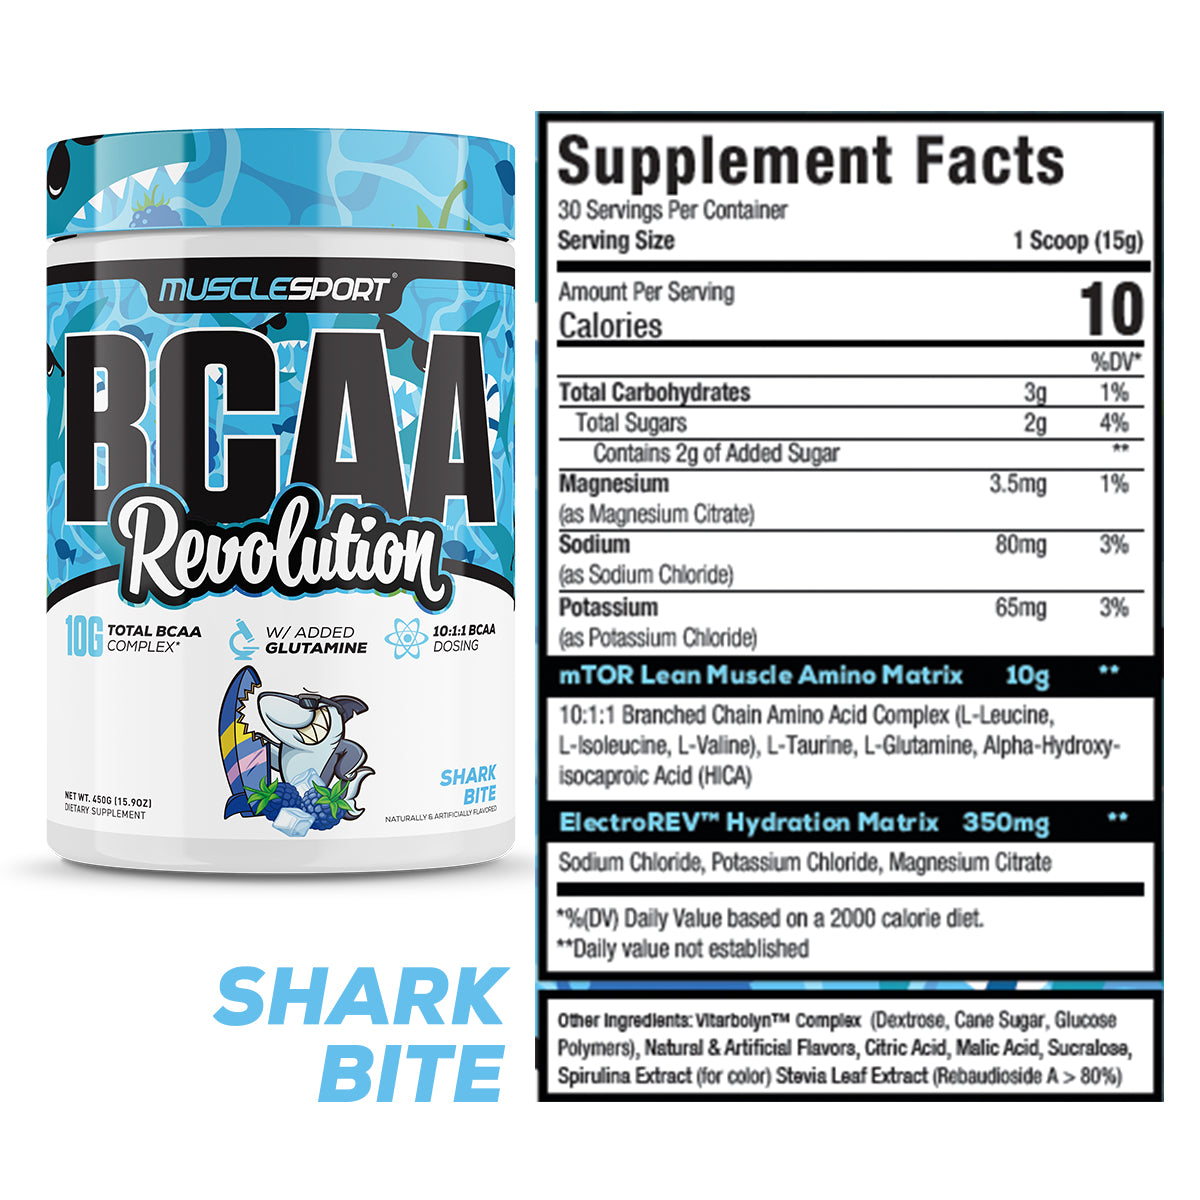 BCAA Shark Bite Supplement Facts